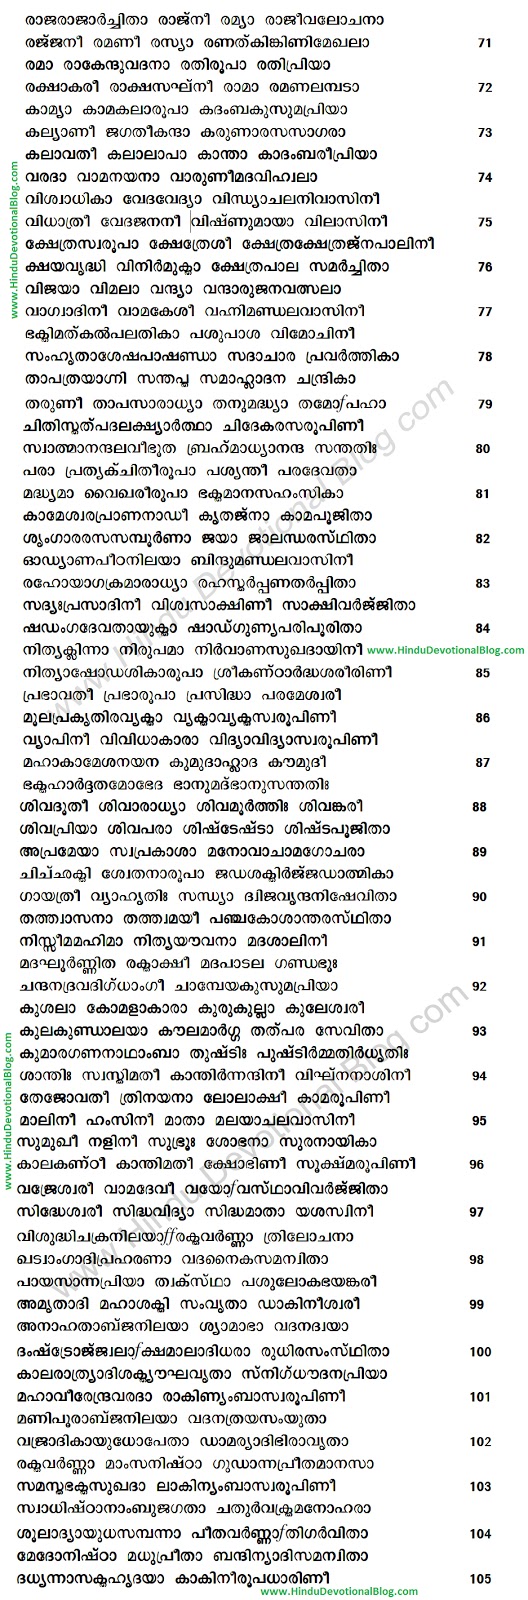 Vishnu sahasranamam lyrics in kannada pdf download